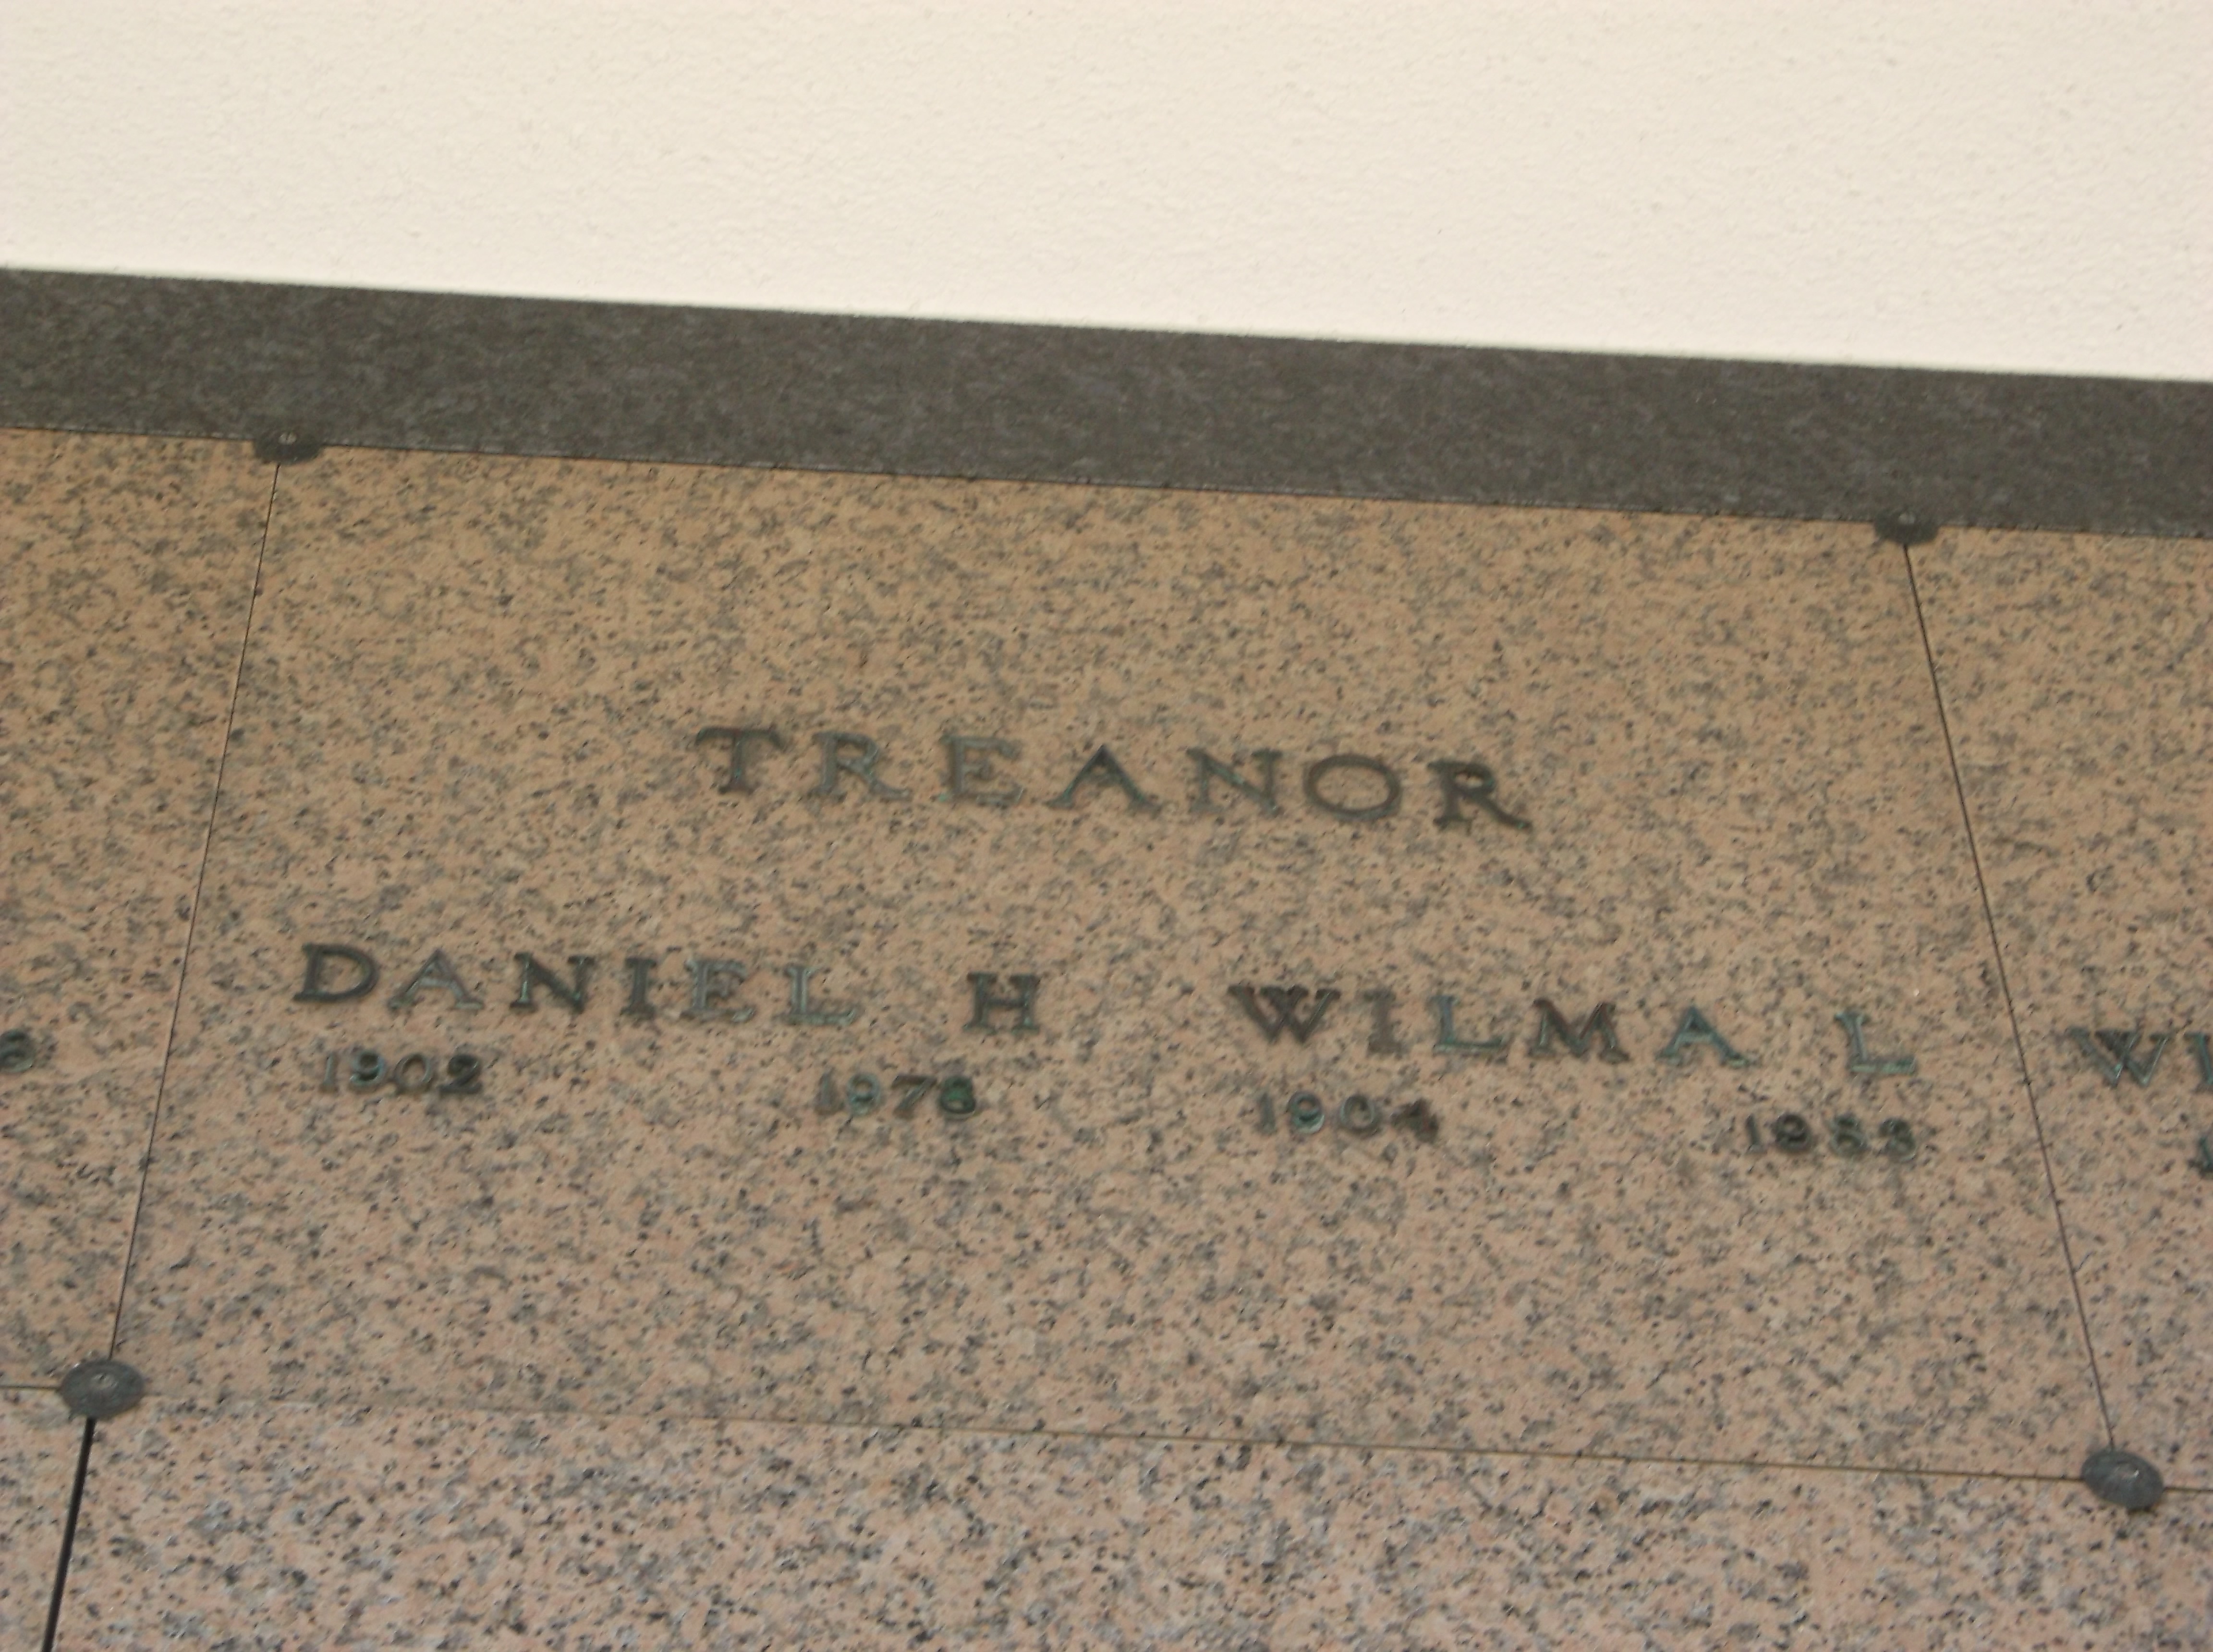 Daniel H Treanor